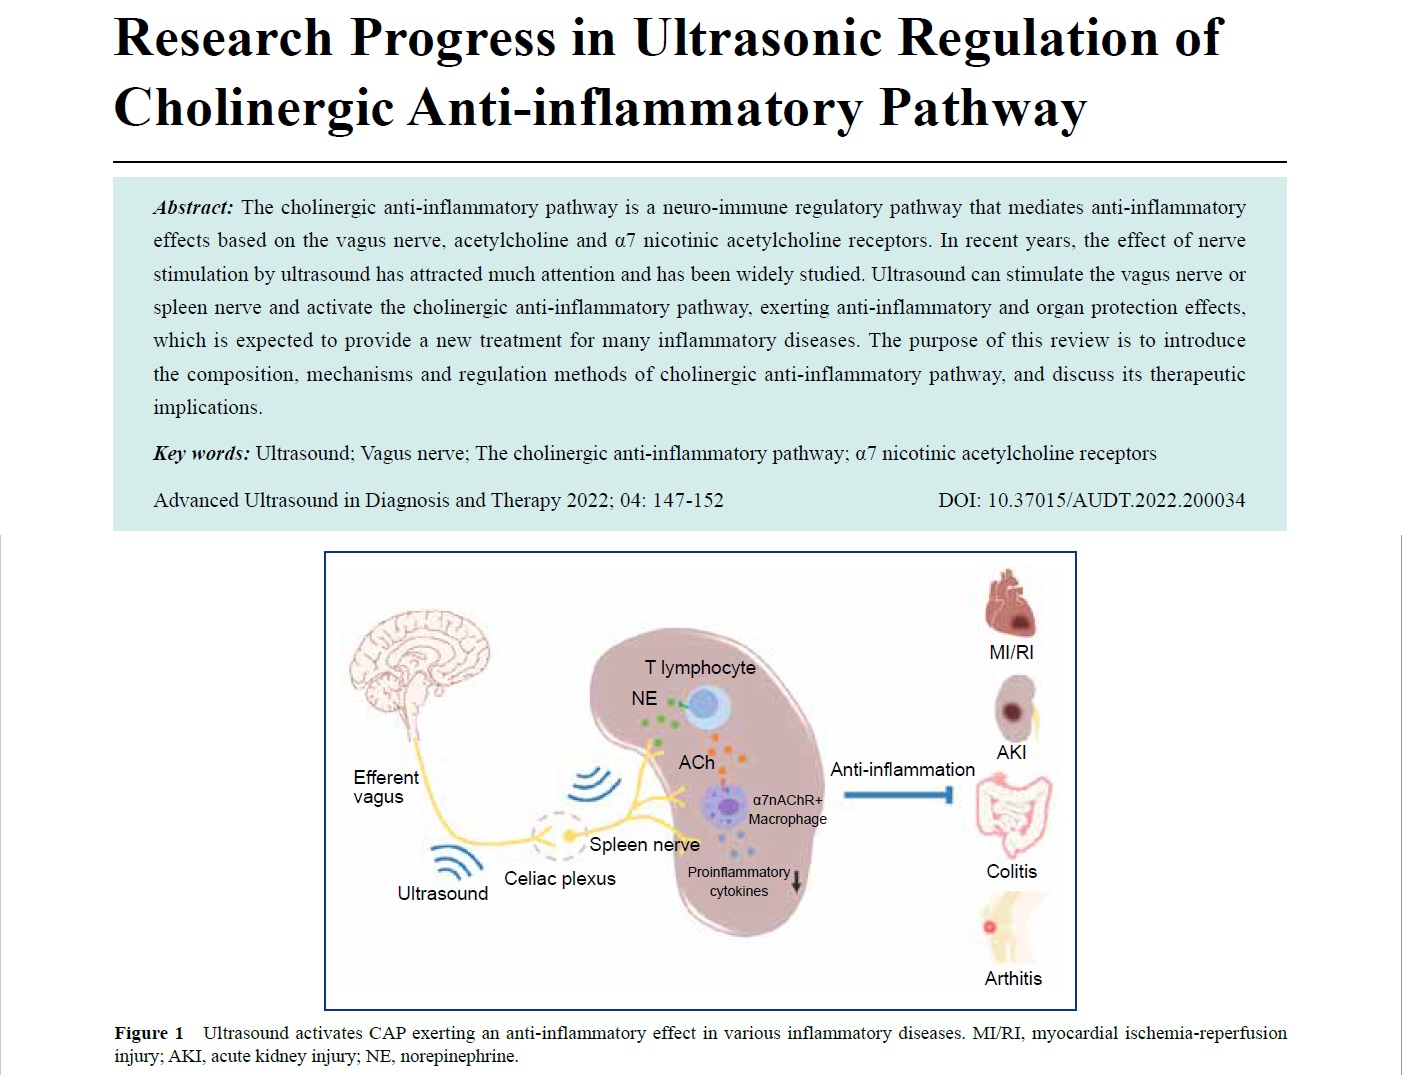 Research Progress in Ultrasonic Regulation of Cholinergic Anti-inflammatory Pathway